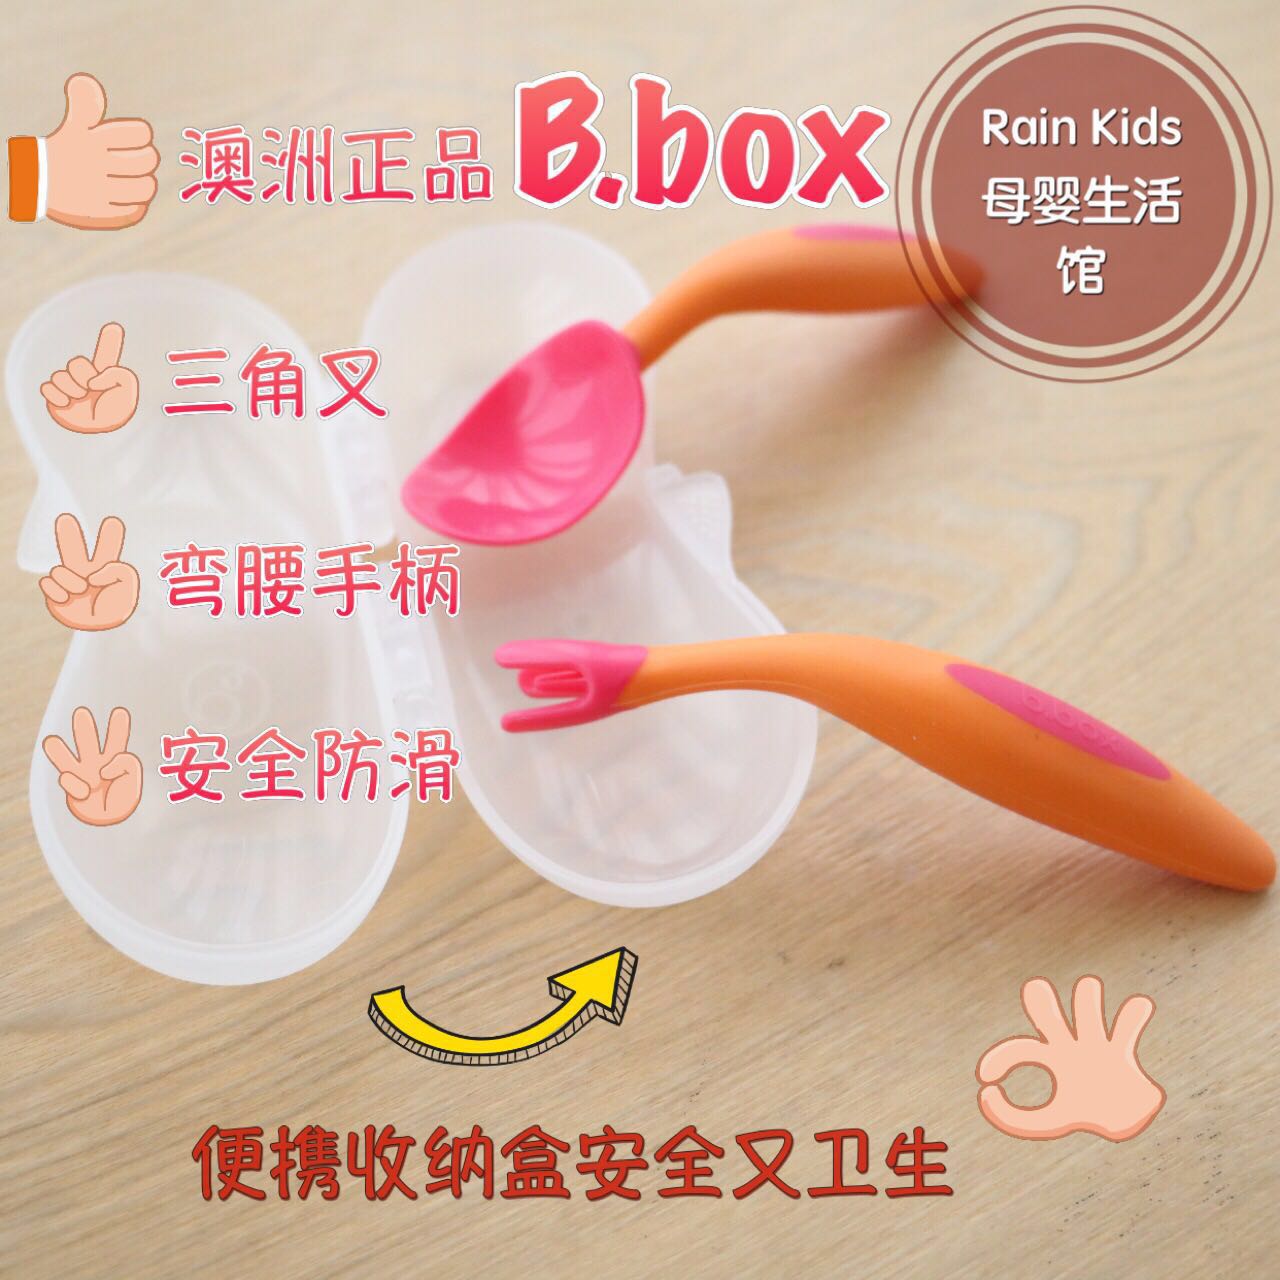 现货澳洲进口b.box儿童训练叉勺bbox宝宝吃饭学习餐具套装便携盒